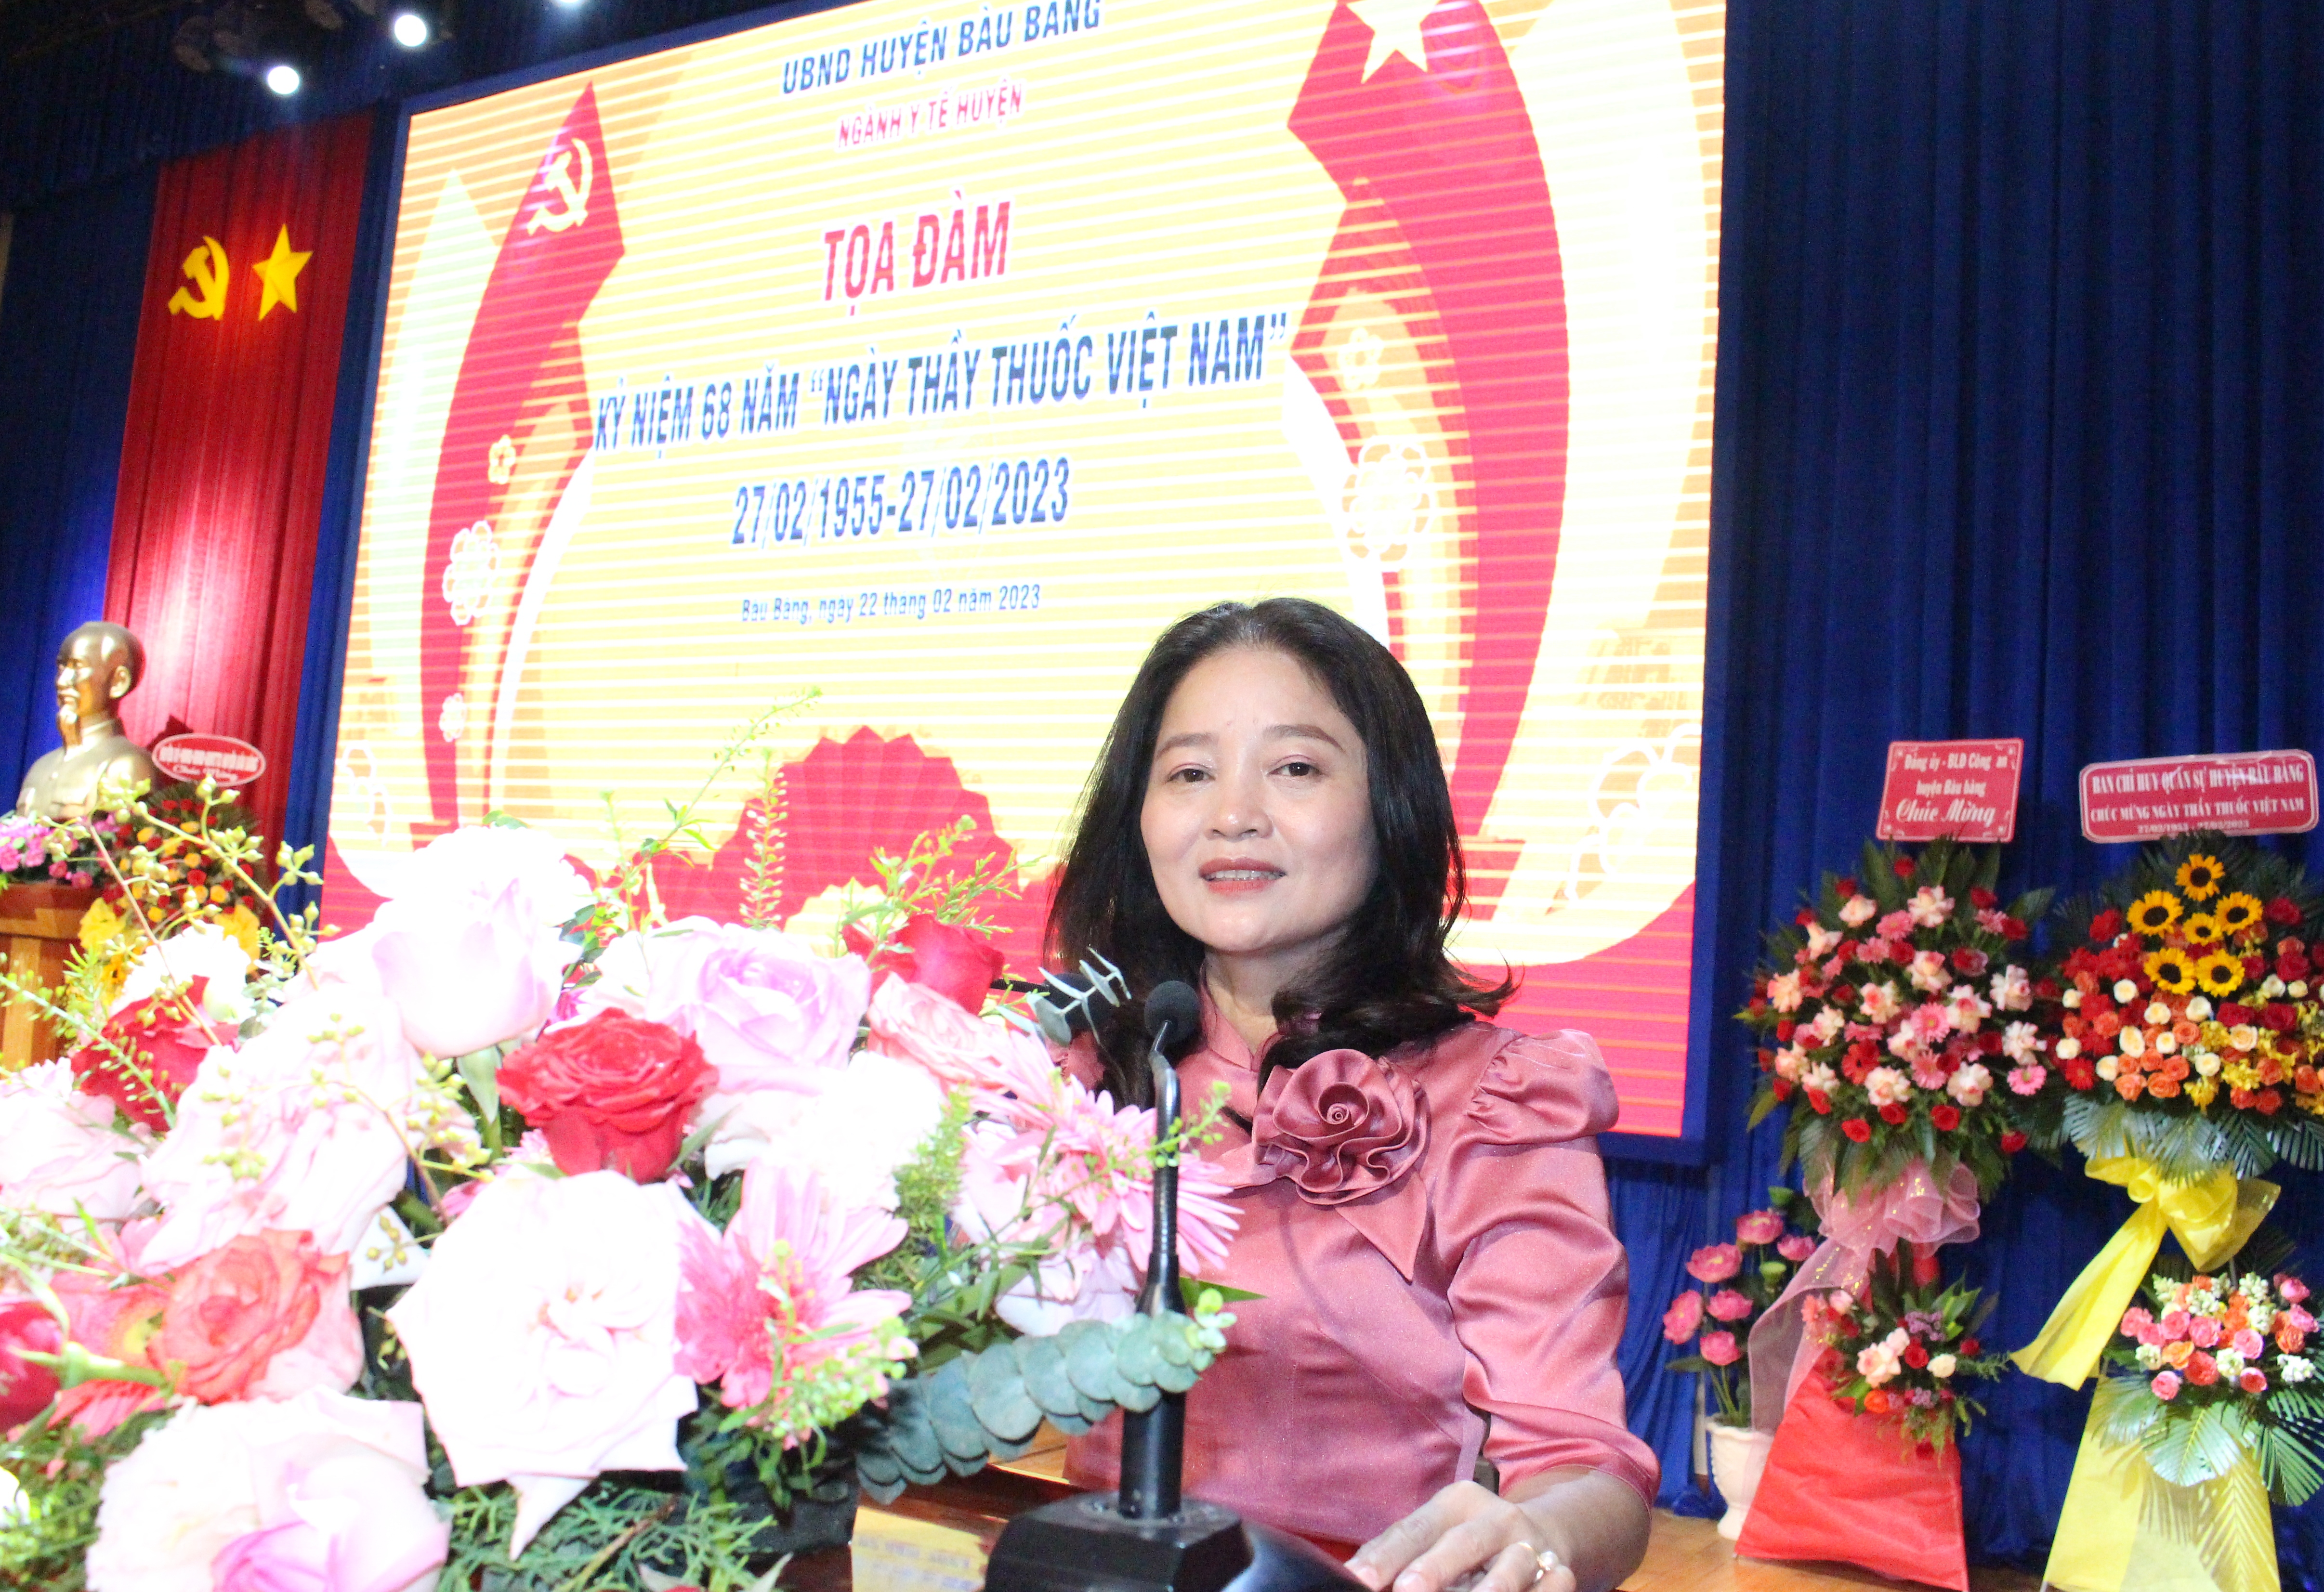 Bà Nguyễn Kim Duyên – Trưởng Phòng Y tế huyện Bàu Bàng thay mặt Ngành y tế huyện đọc thư của Bác Hồ gửi Ngành y tế.